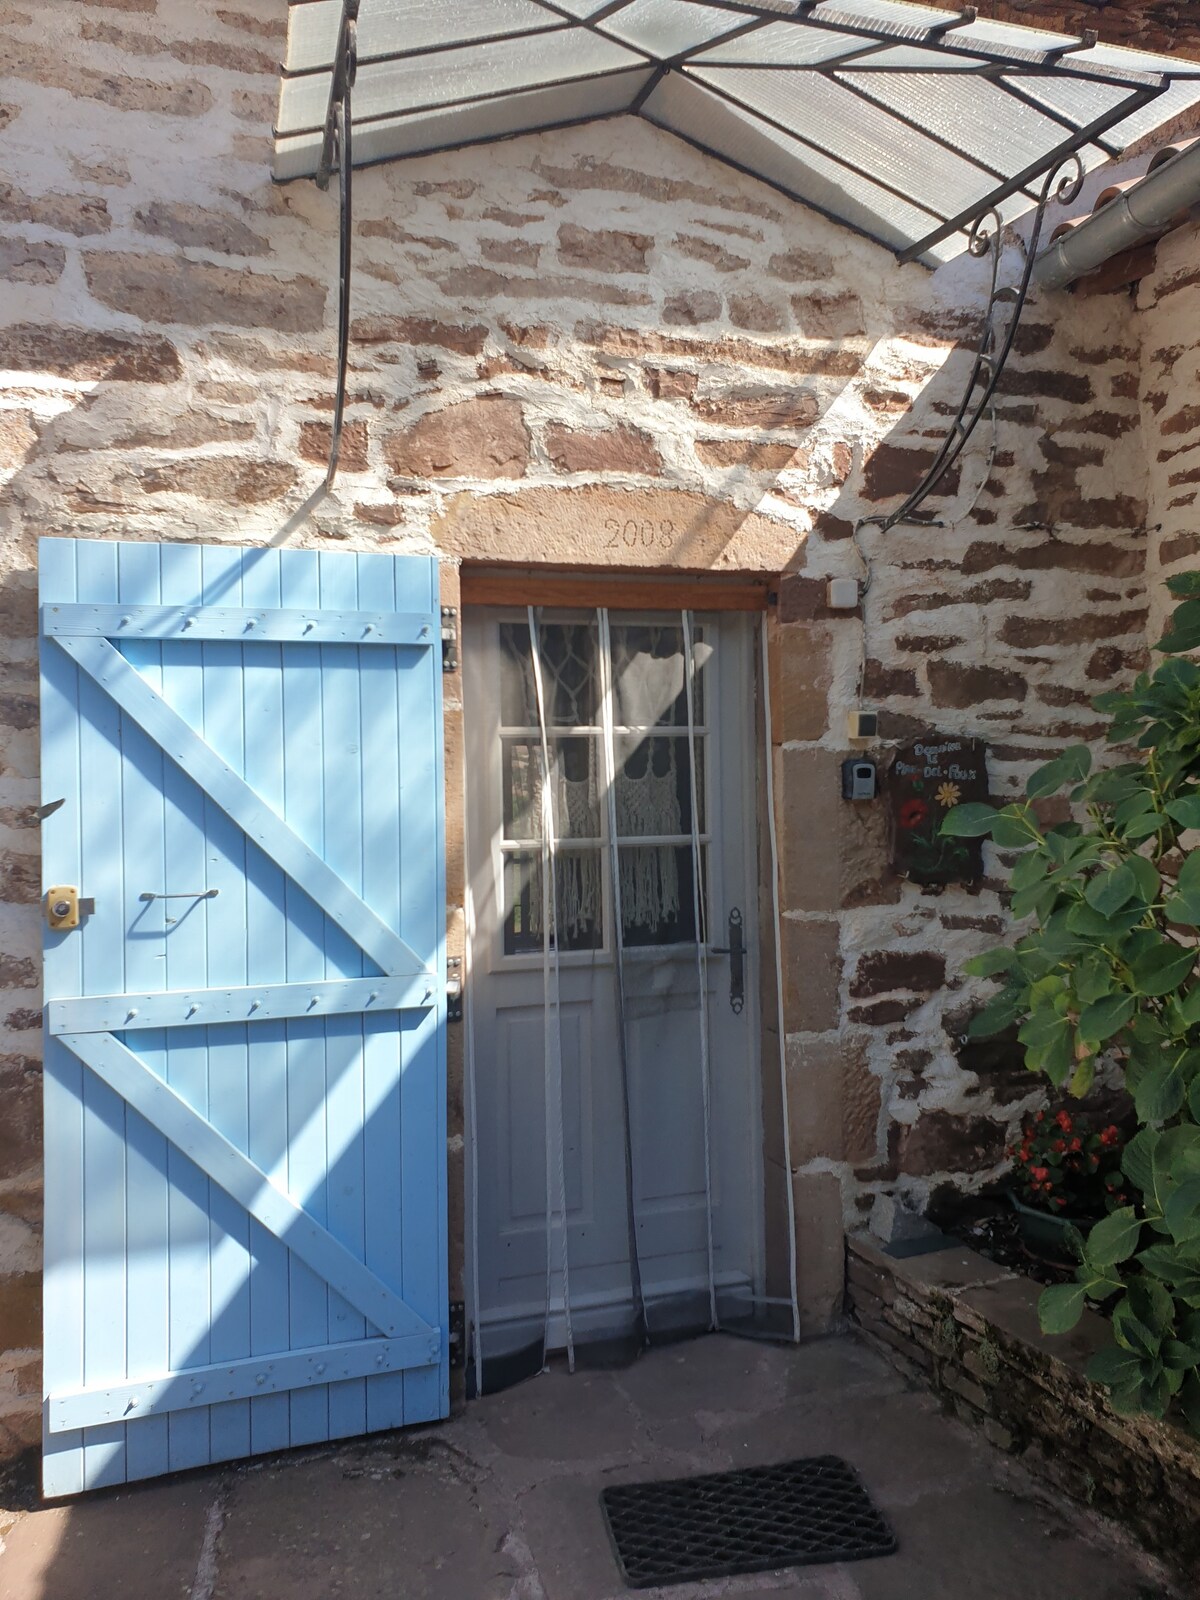 Domaine du Plan del Poux Gîte rural Sud Aveyron